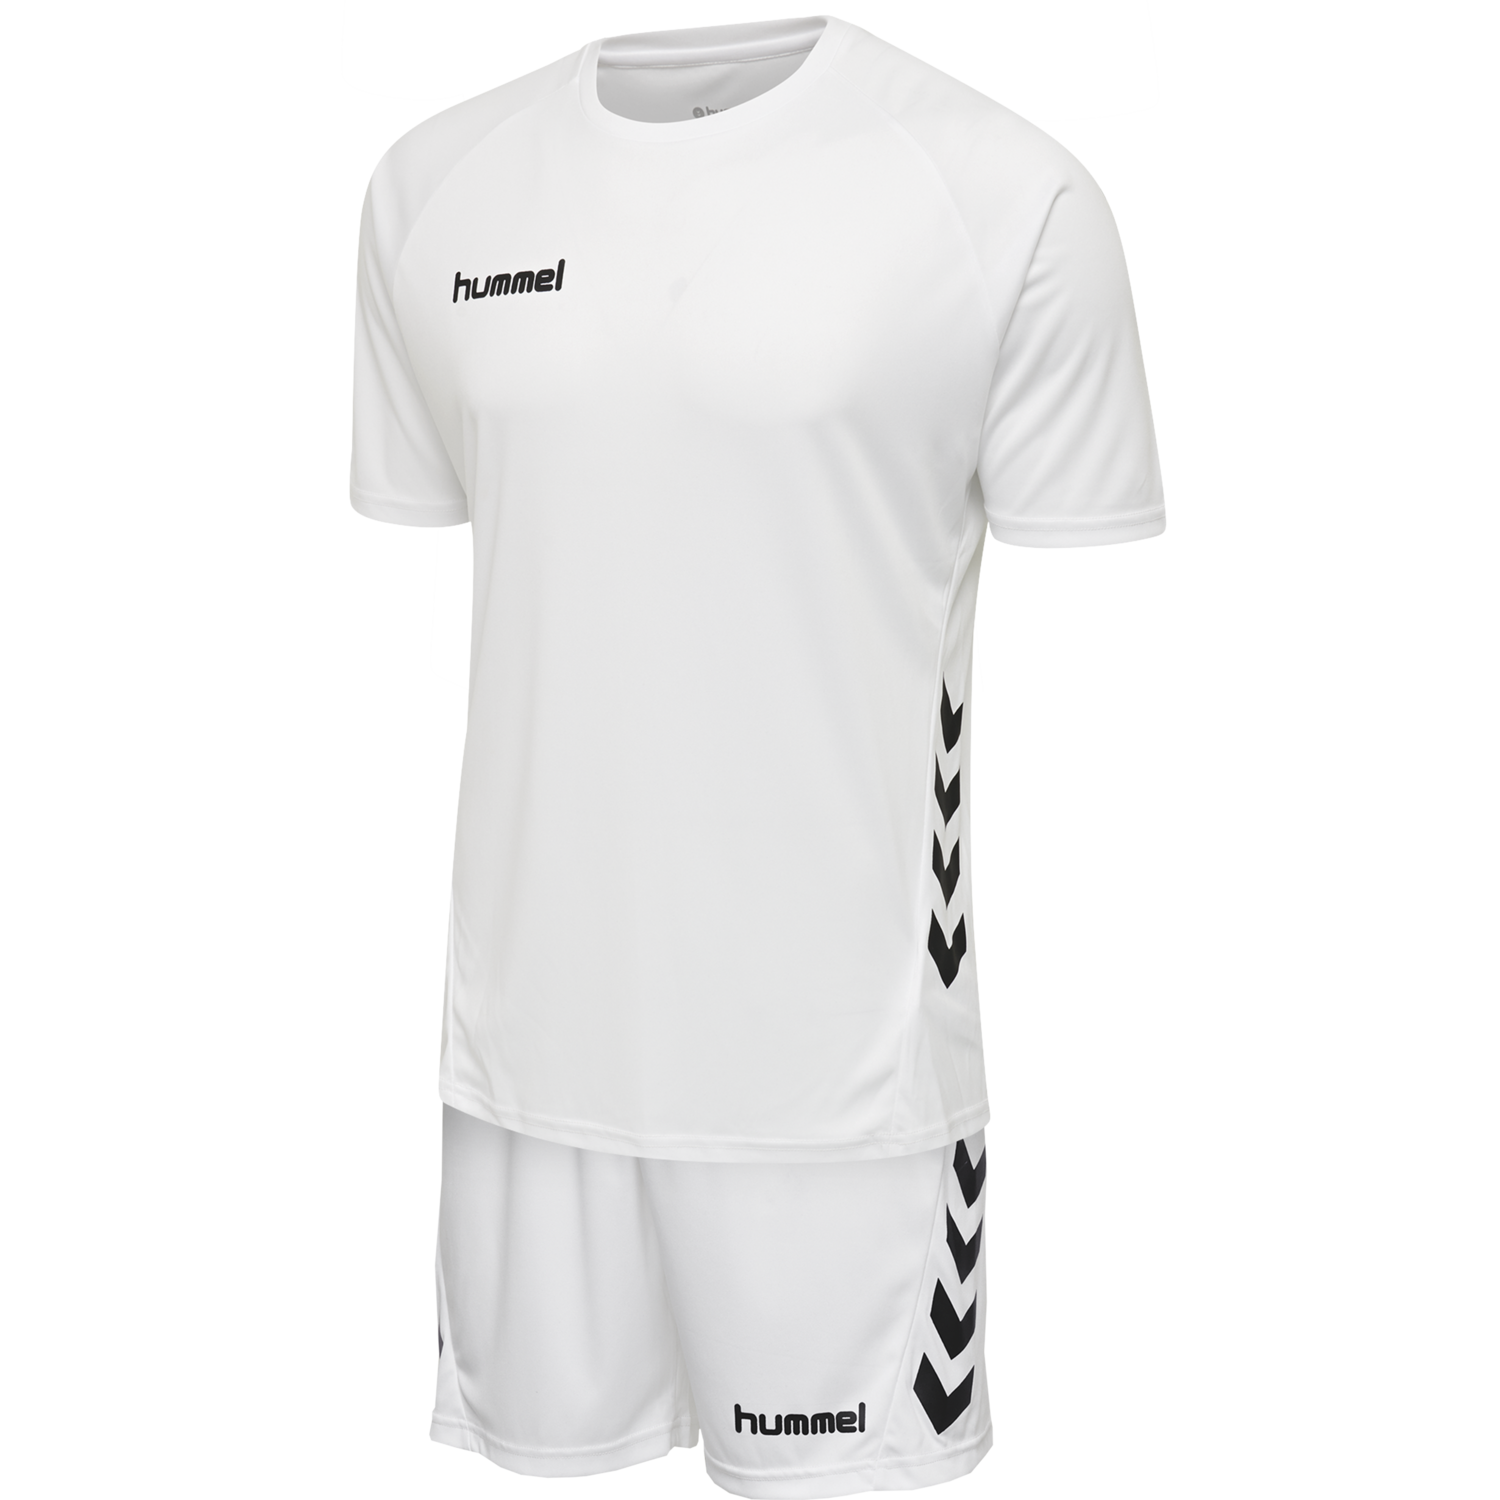 Hummel Match Kit Long Sleeve Football Shirt Mens Soccer Jersey Top T-Shirt 